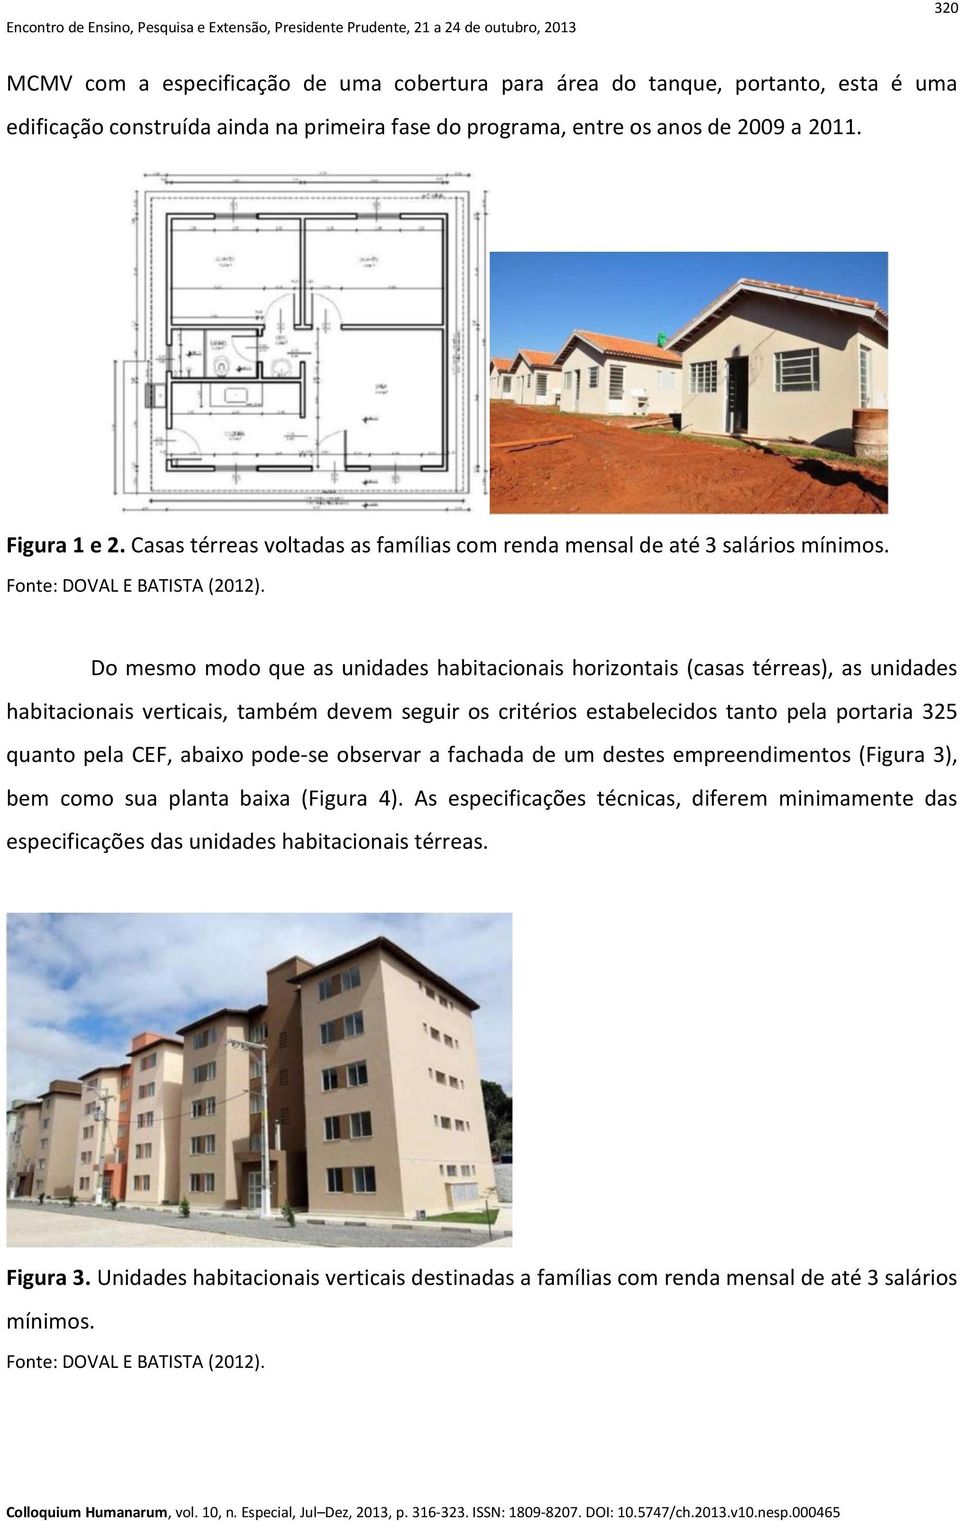 Do mesmo modo que as unidades habitacionais horizontais (casas térreas), as unidades habitacionais verticais, também devem seguir os critérios estabelecidos tanto pela portaria 325 quanto pela CEF,